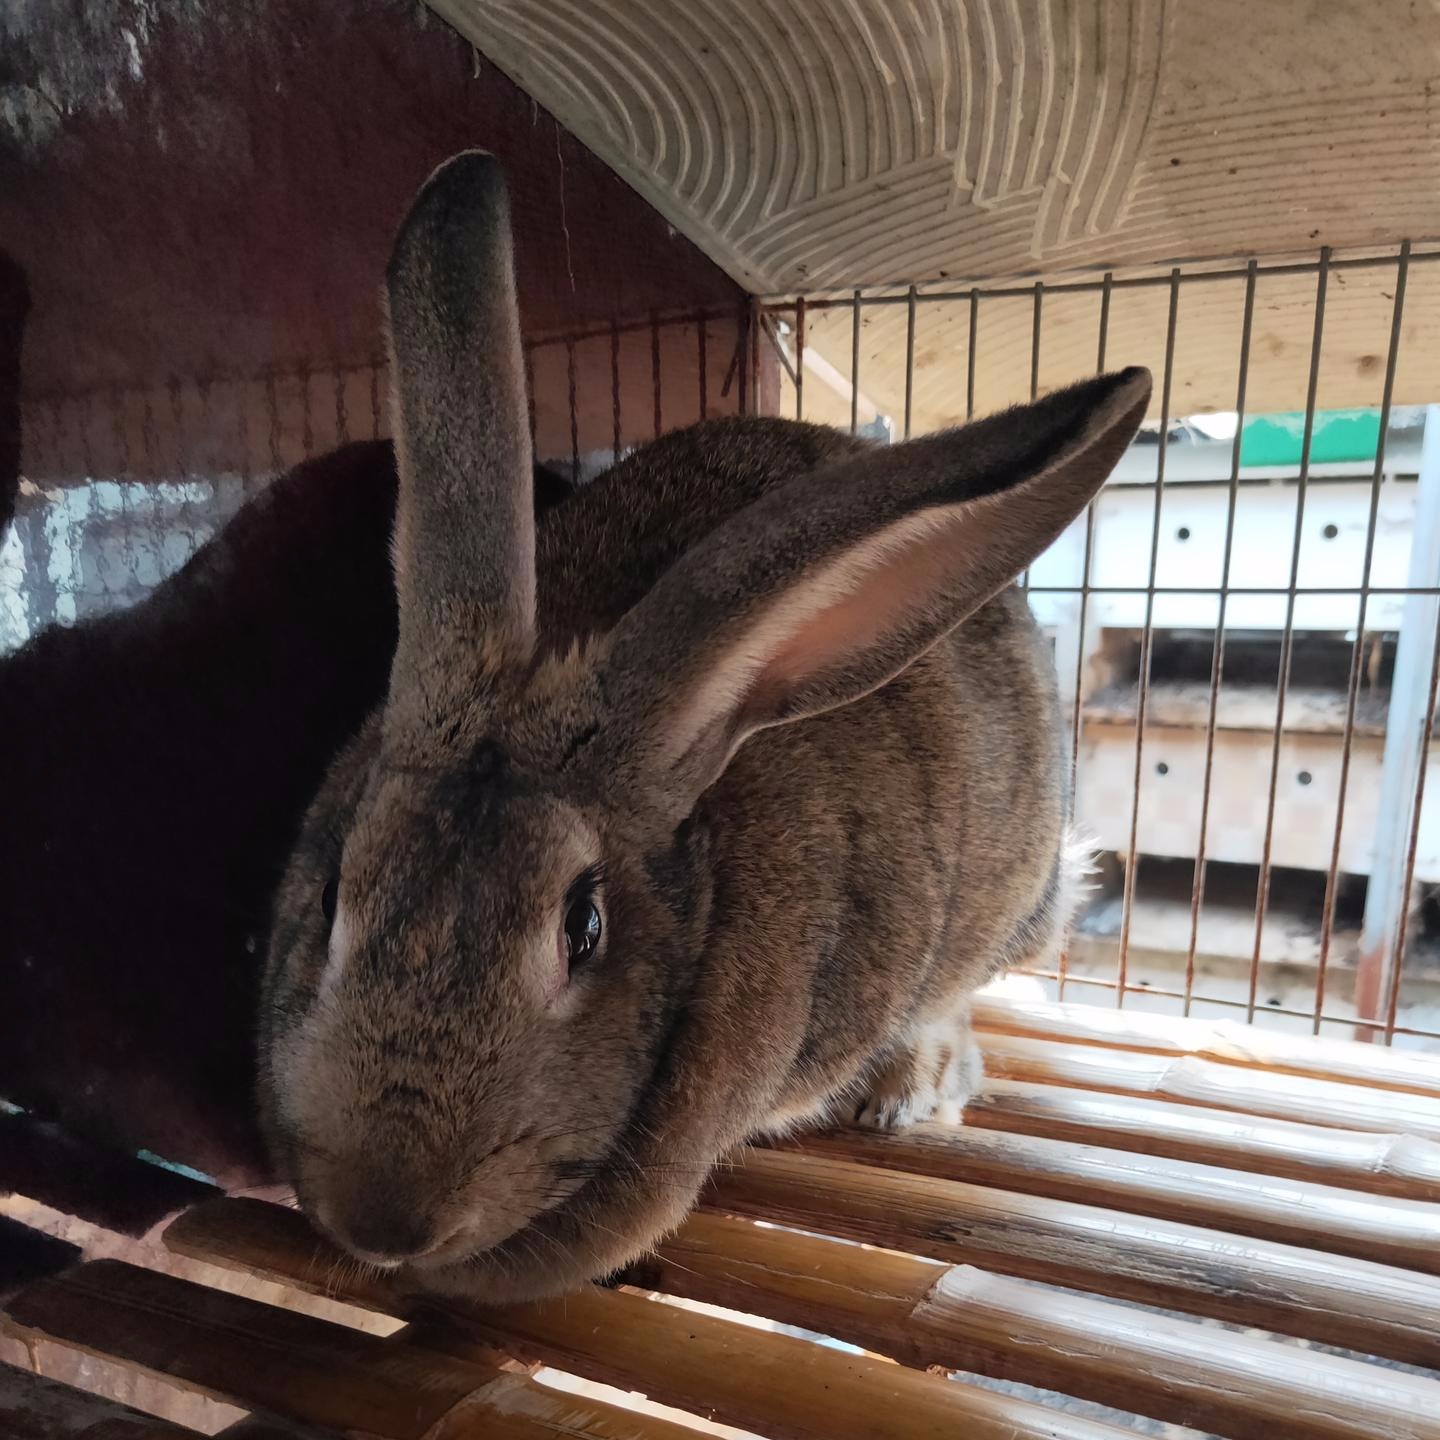 比利时养殖 杂交野兔养殖 甩卖KYHkJkljKHK 长毛兔养殖 肉兔种兔养殖 包回收4